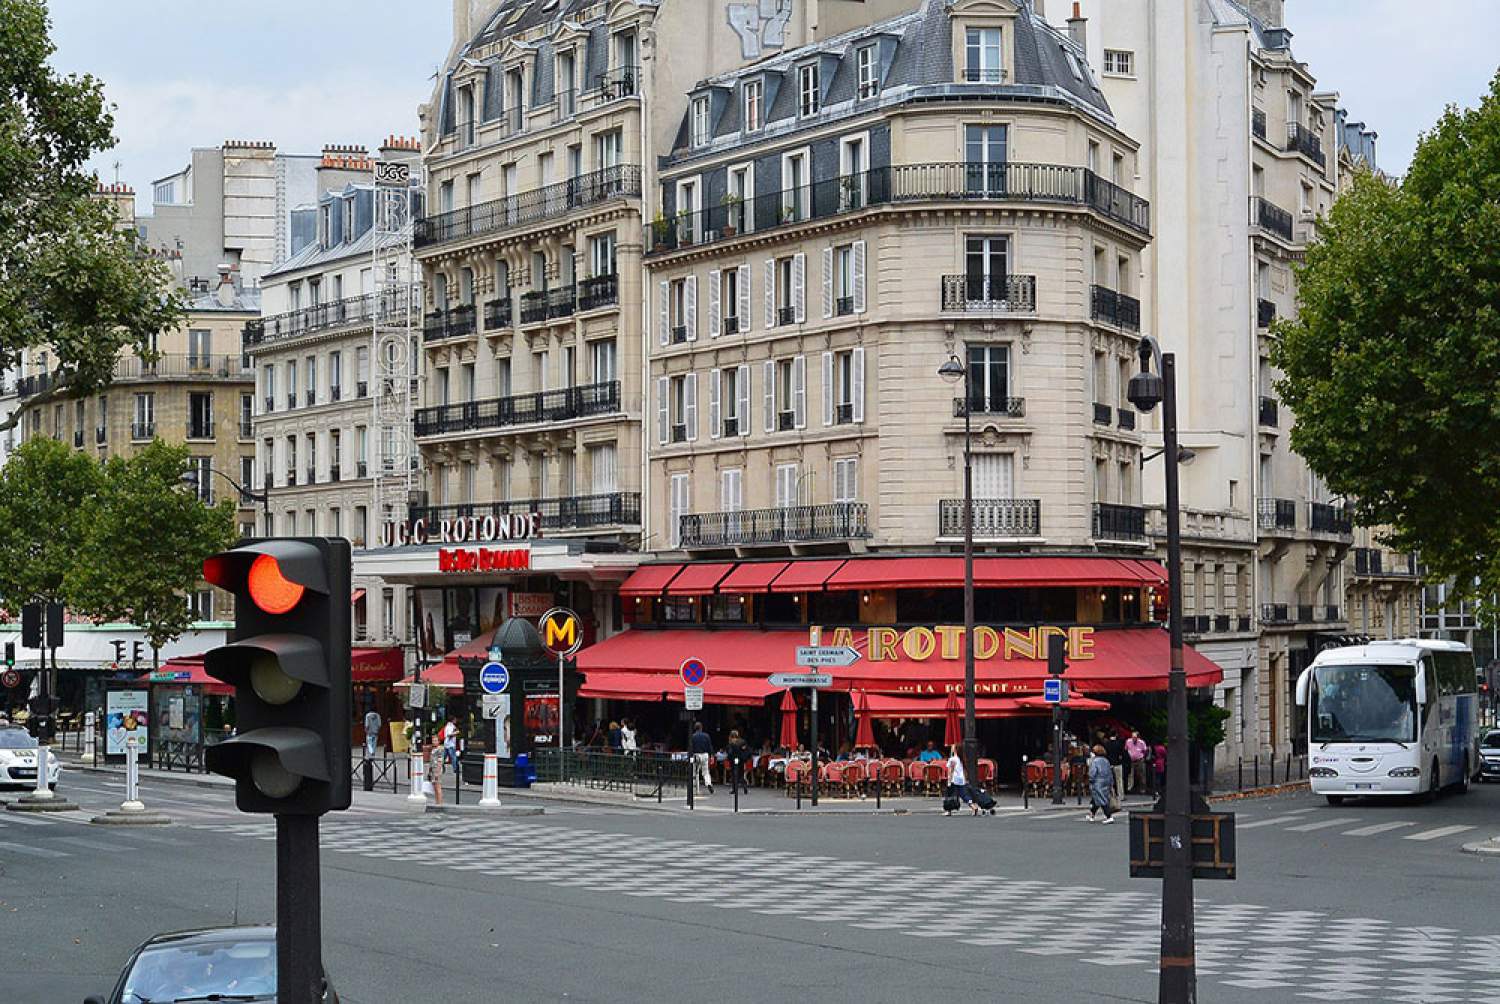 Restaurant La Rotonde, Paris